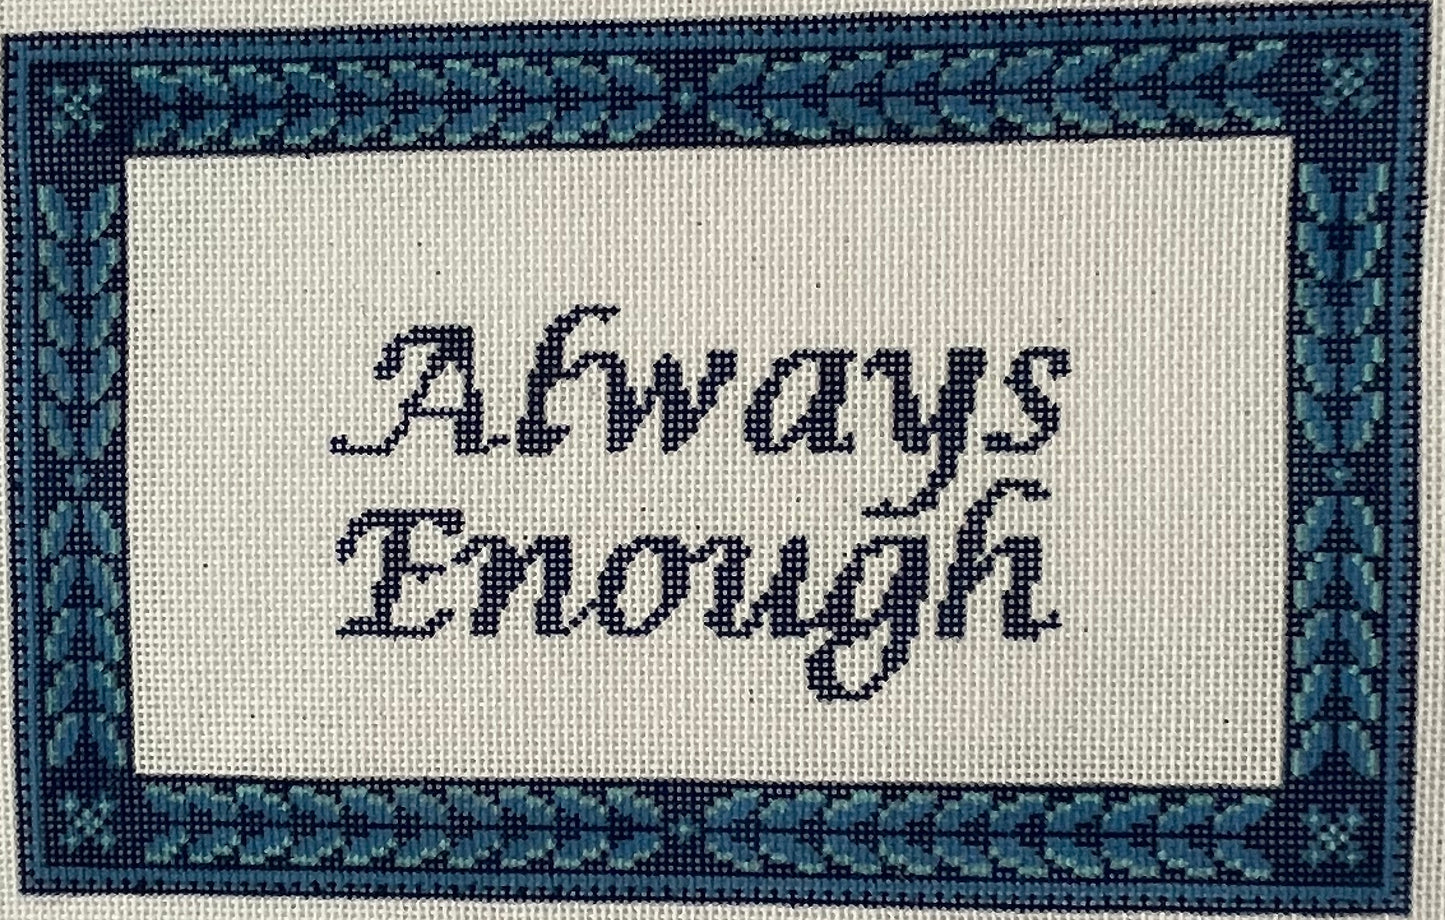 Always Enough